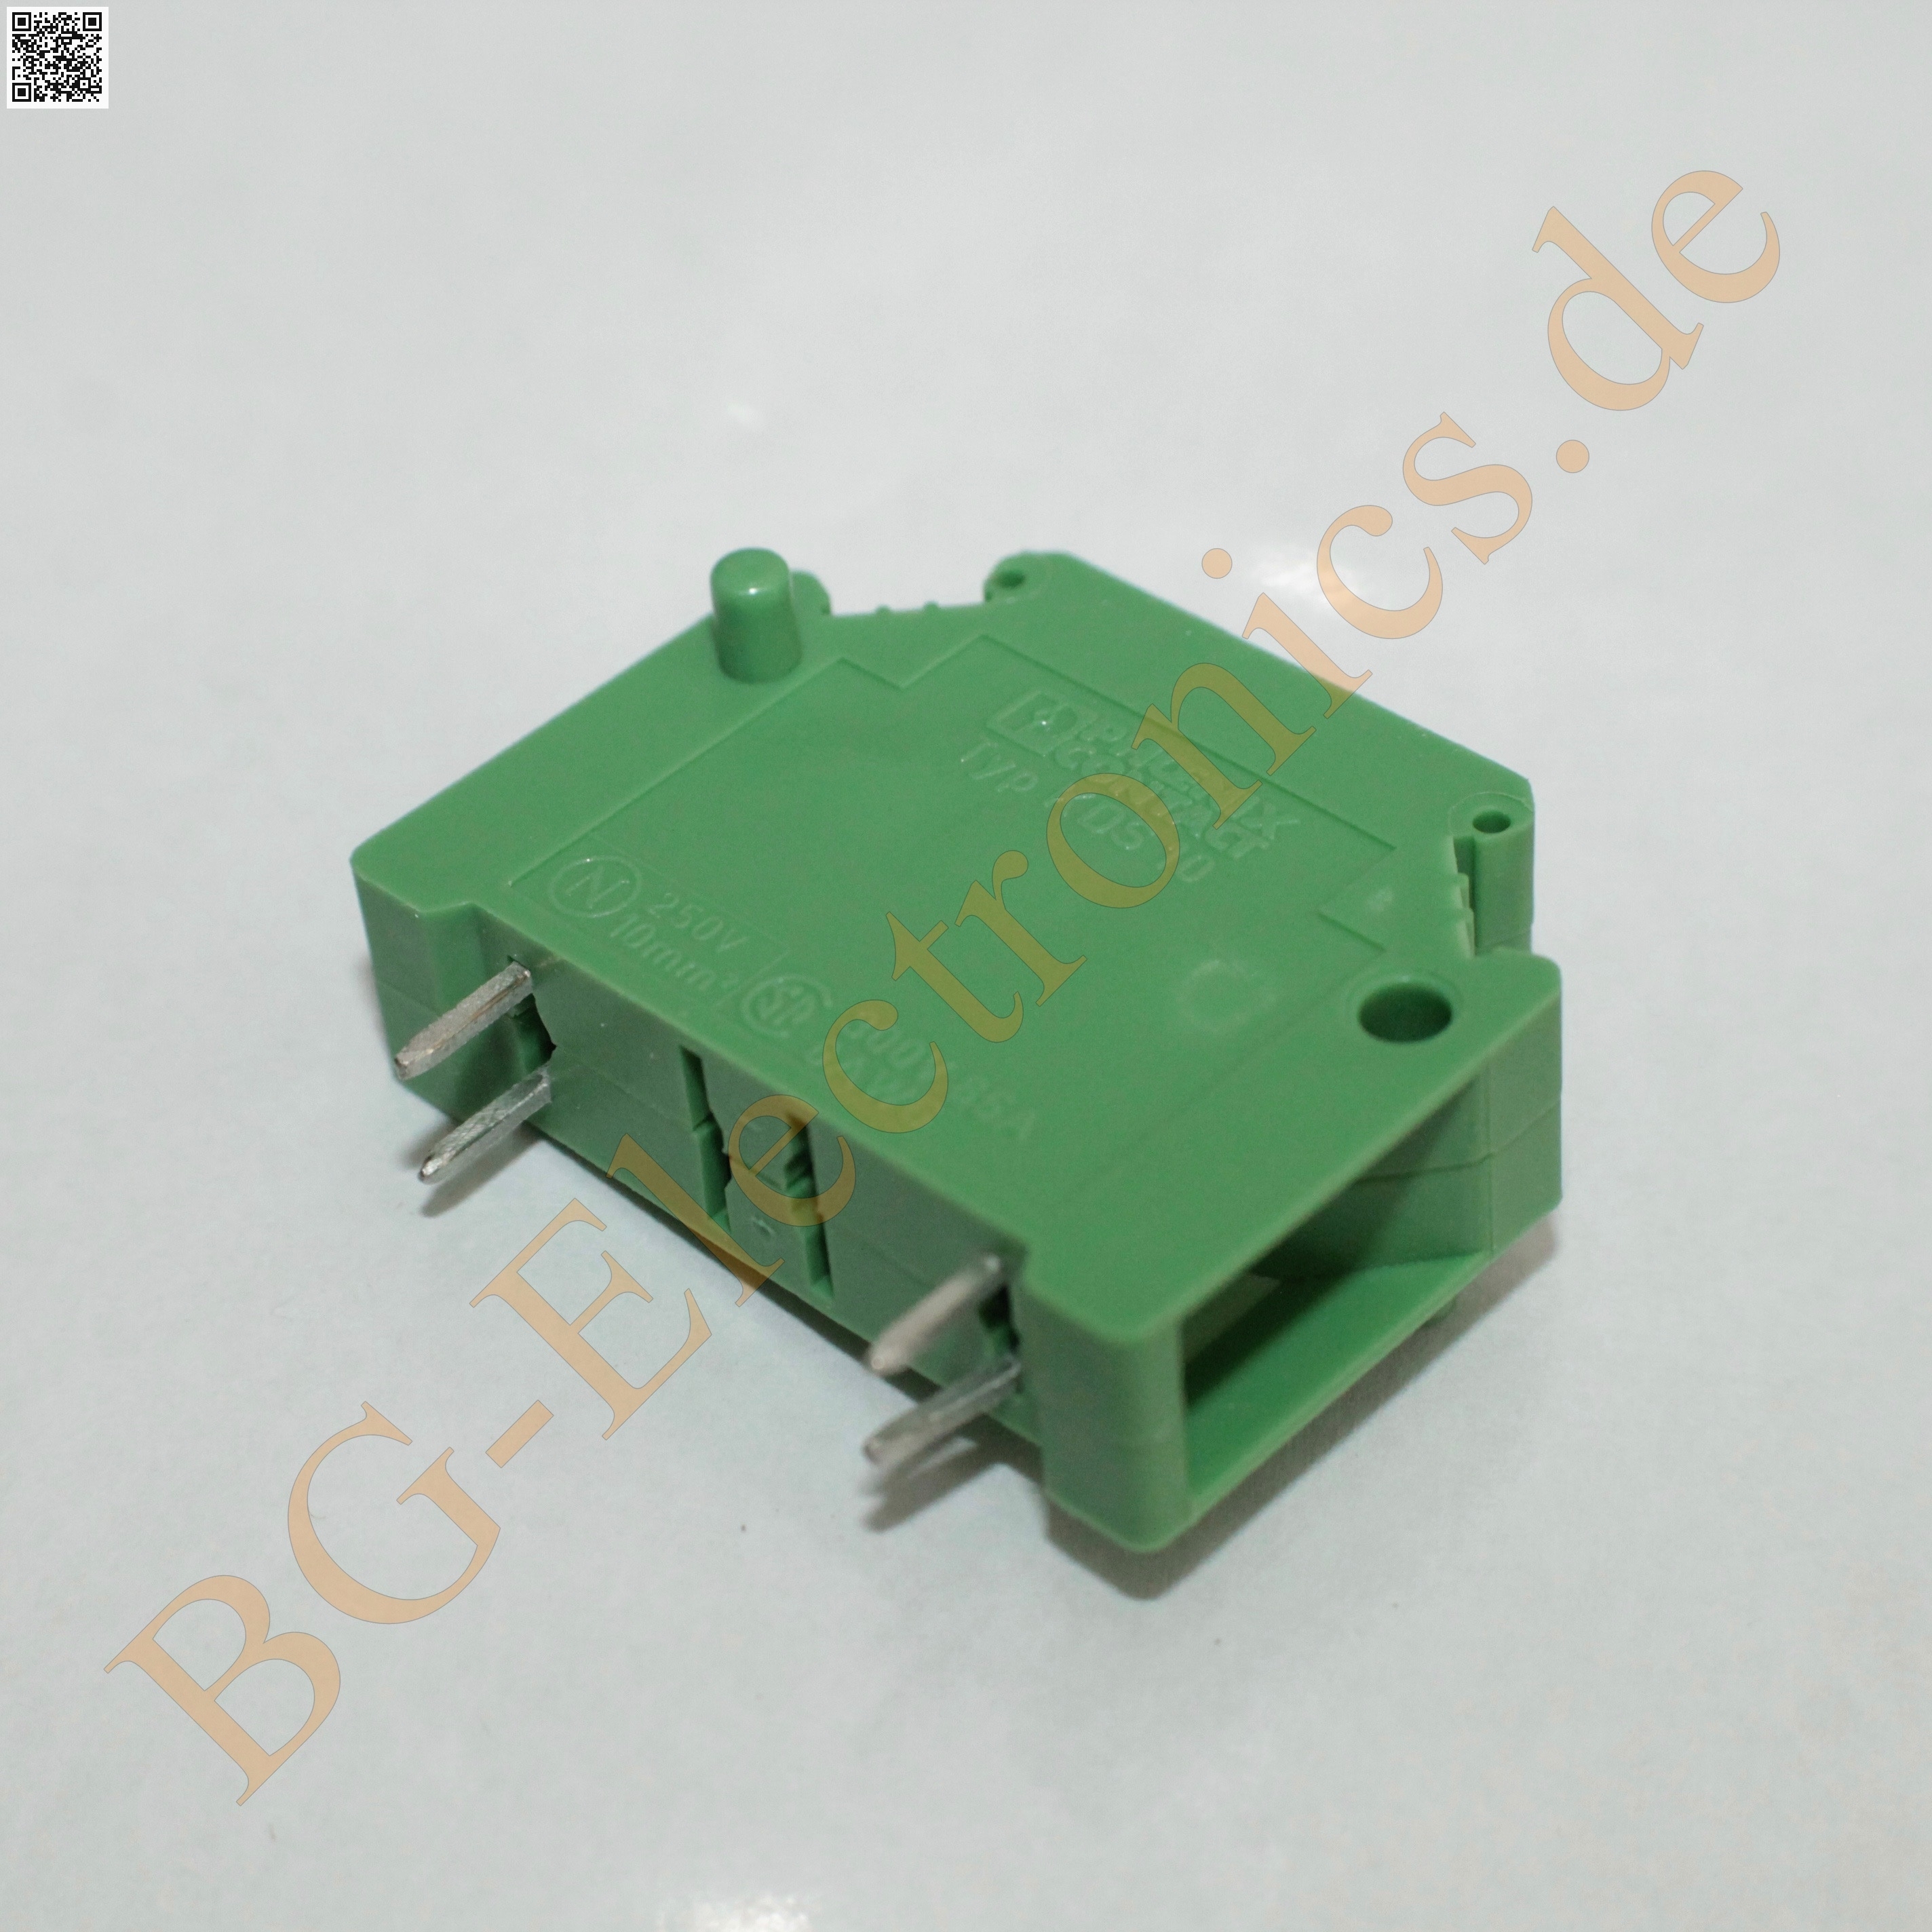 PCB terminal block - KDS10 - 1704020